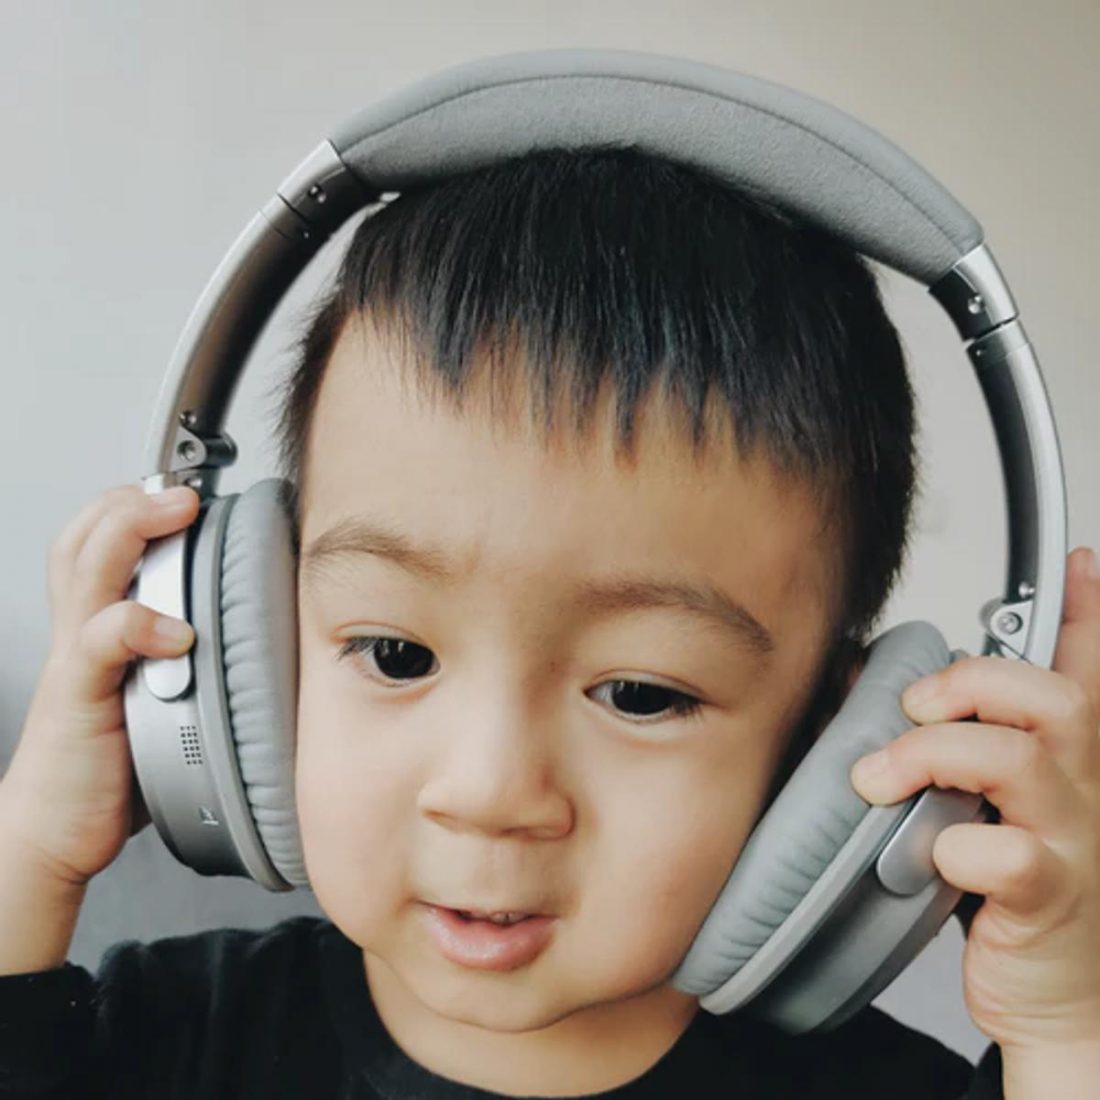 Niño con auriculares que no le quedan bien (De: Unsplash)